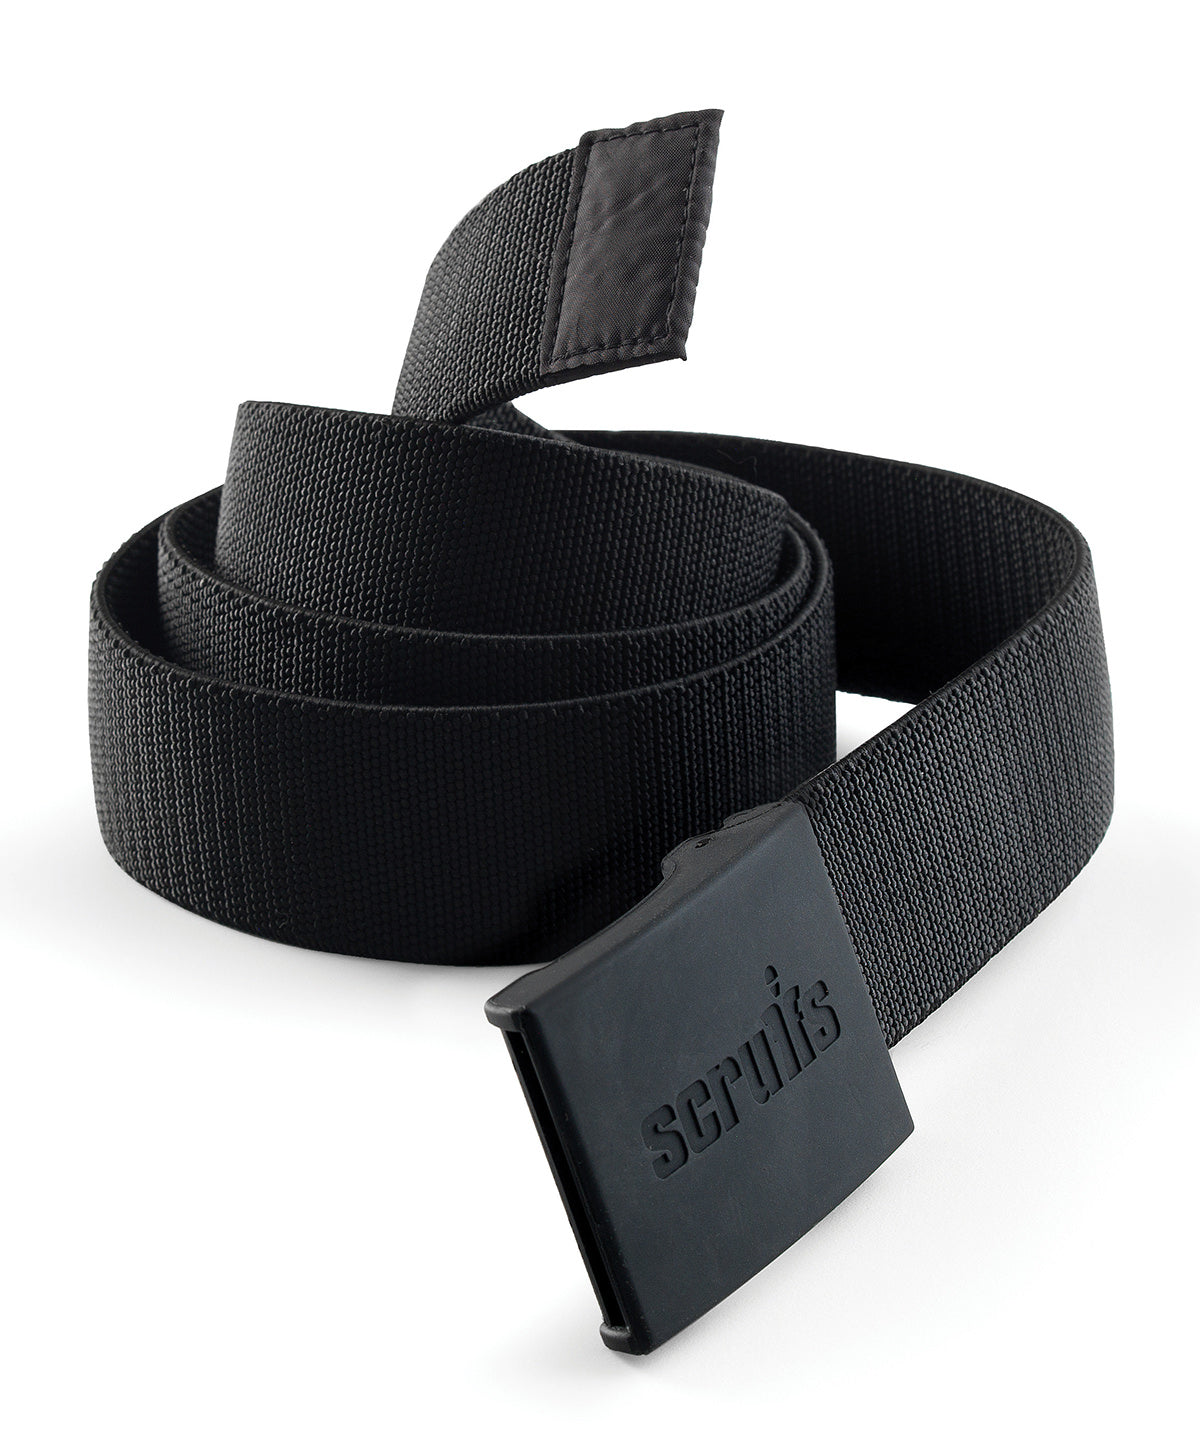 Belti - Trade Stretch Belt